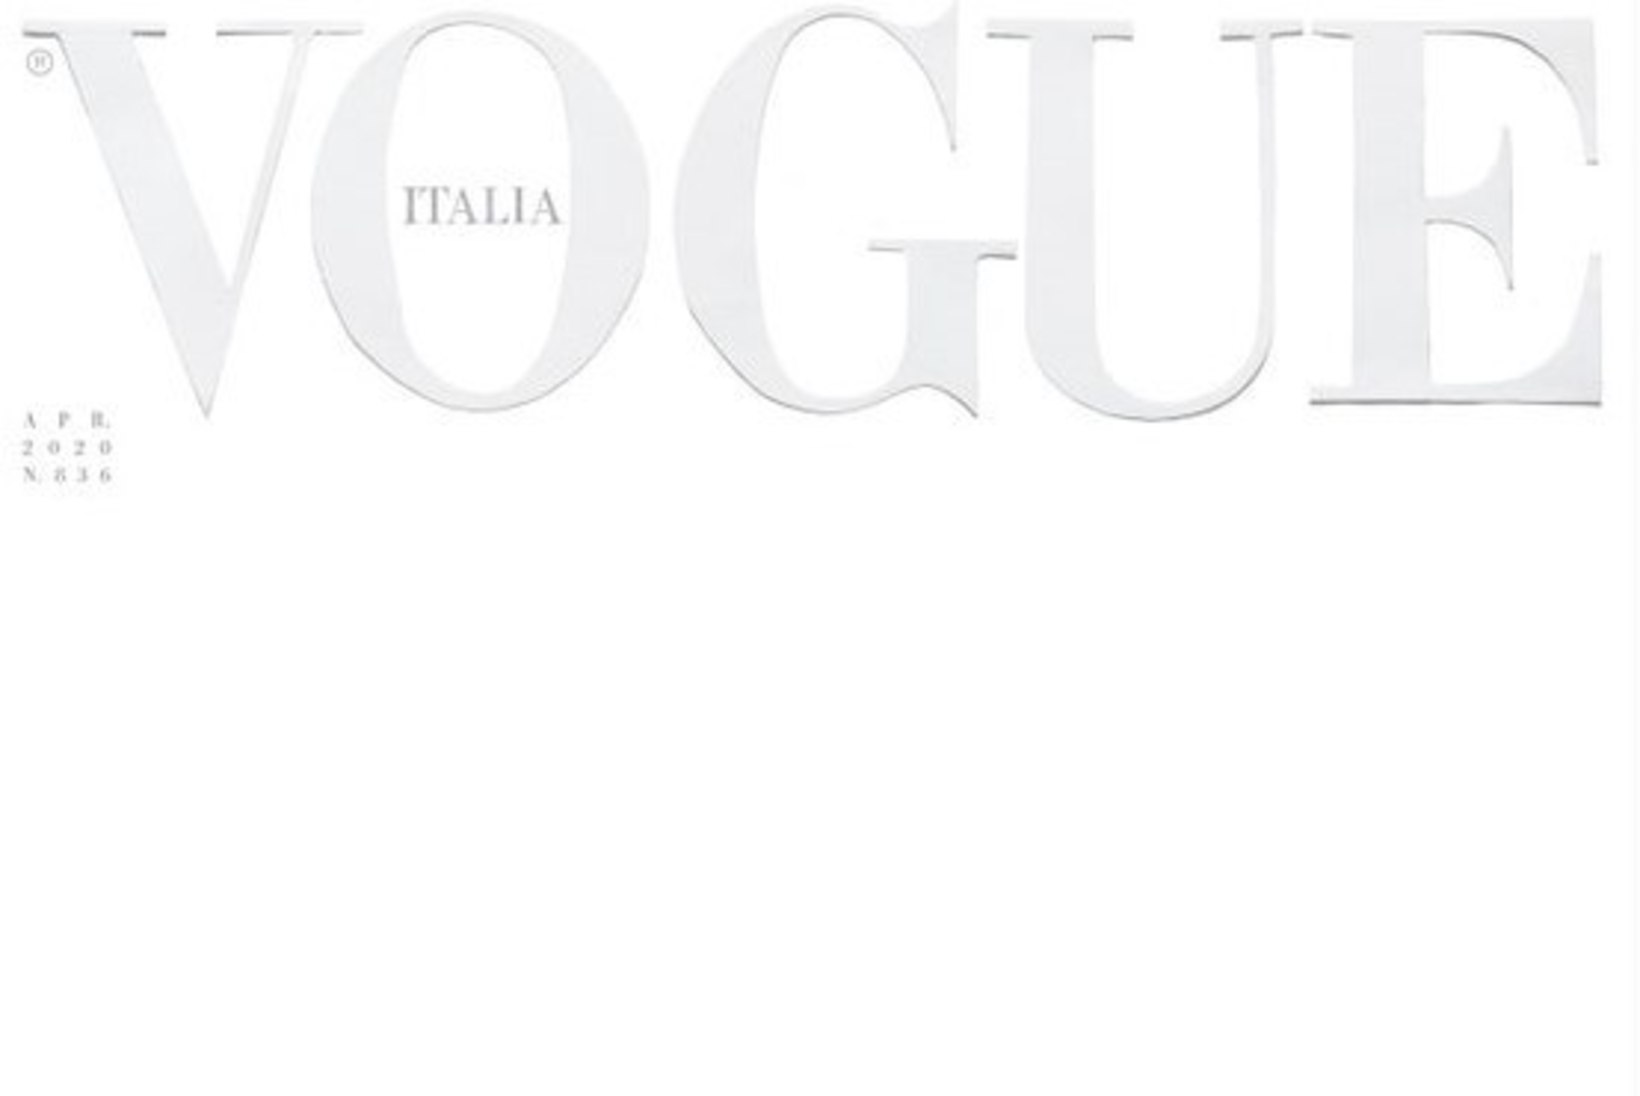 ESMAKORDSELT AJALOOS! Itaalia Vogue’i üllatav esikaanevalik austab koroona eesliinil olijaid